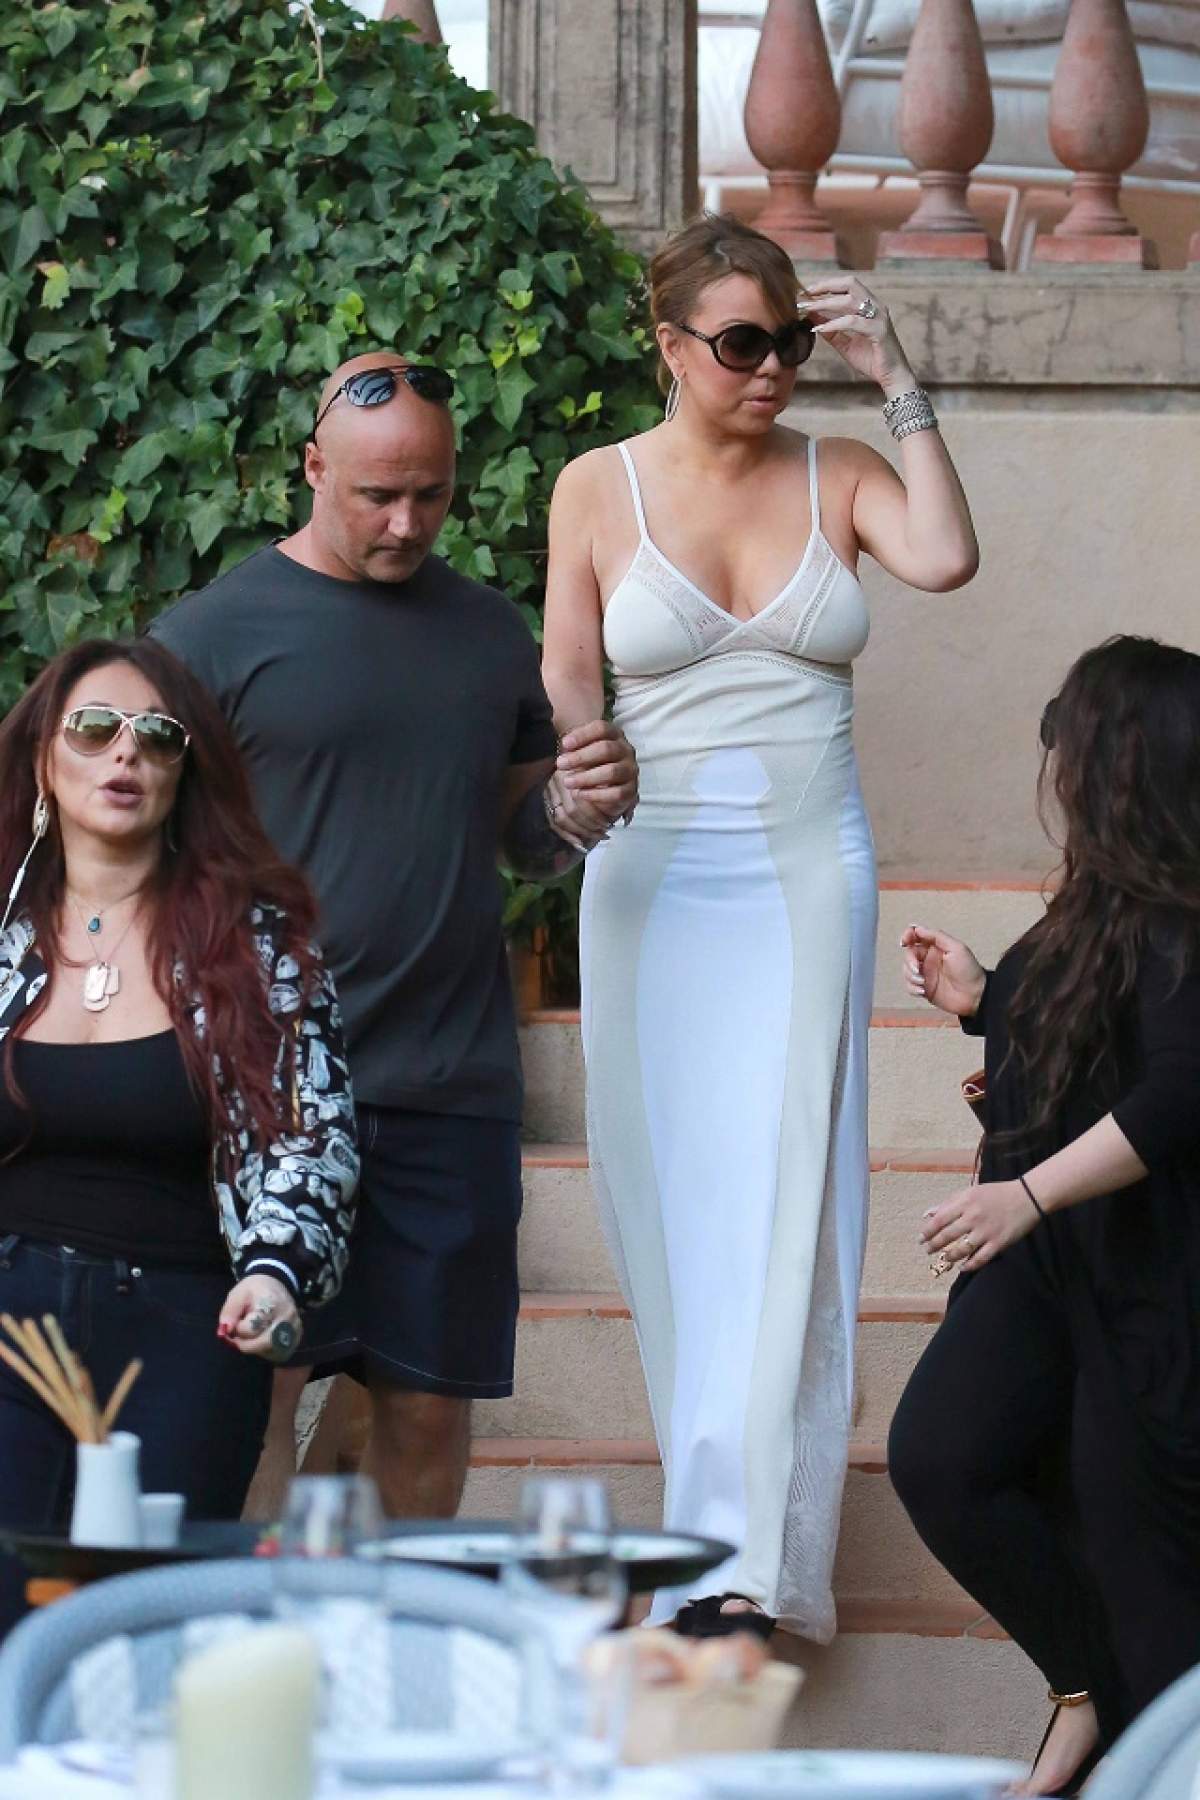 FOTO / Mariah Carey, fără sutien şi cu "antenele" pe afară! A ieşit oraş fără să aibă grijă ce lasă la vedere